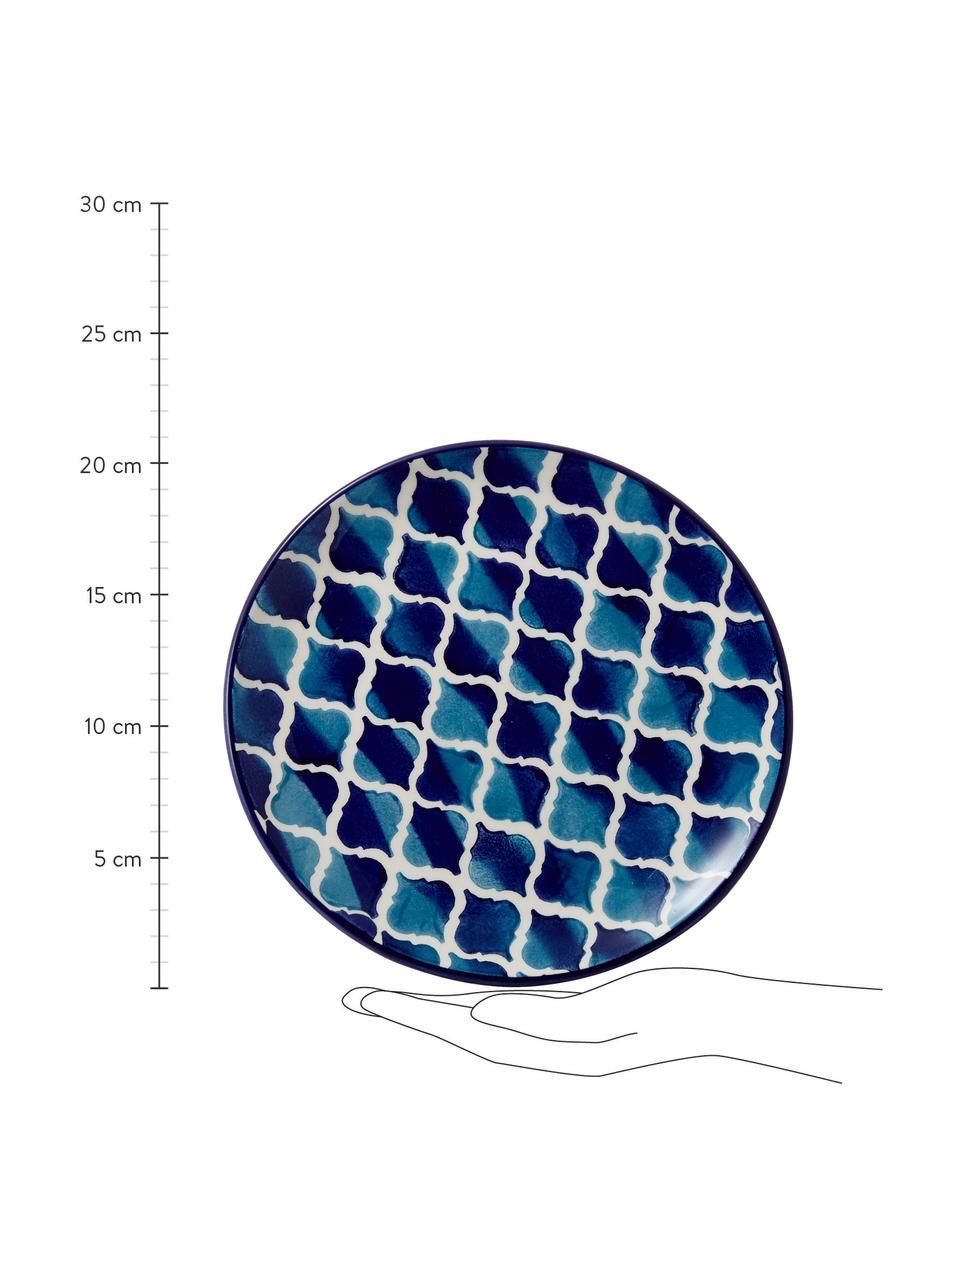 Ręcznie wykonany talerz śniadaniowy Ikat, 6 szt., Ceramika, Biały, niebieski, Ø 21 cm